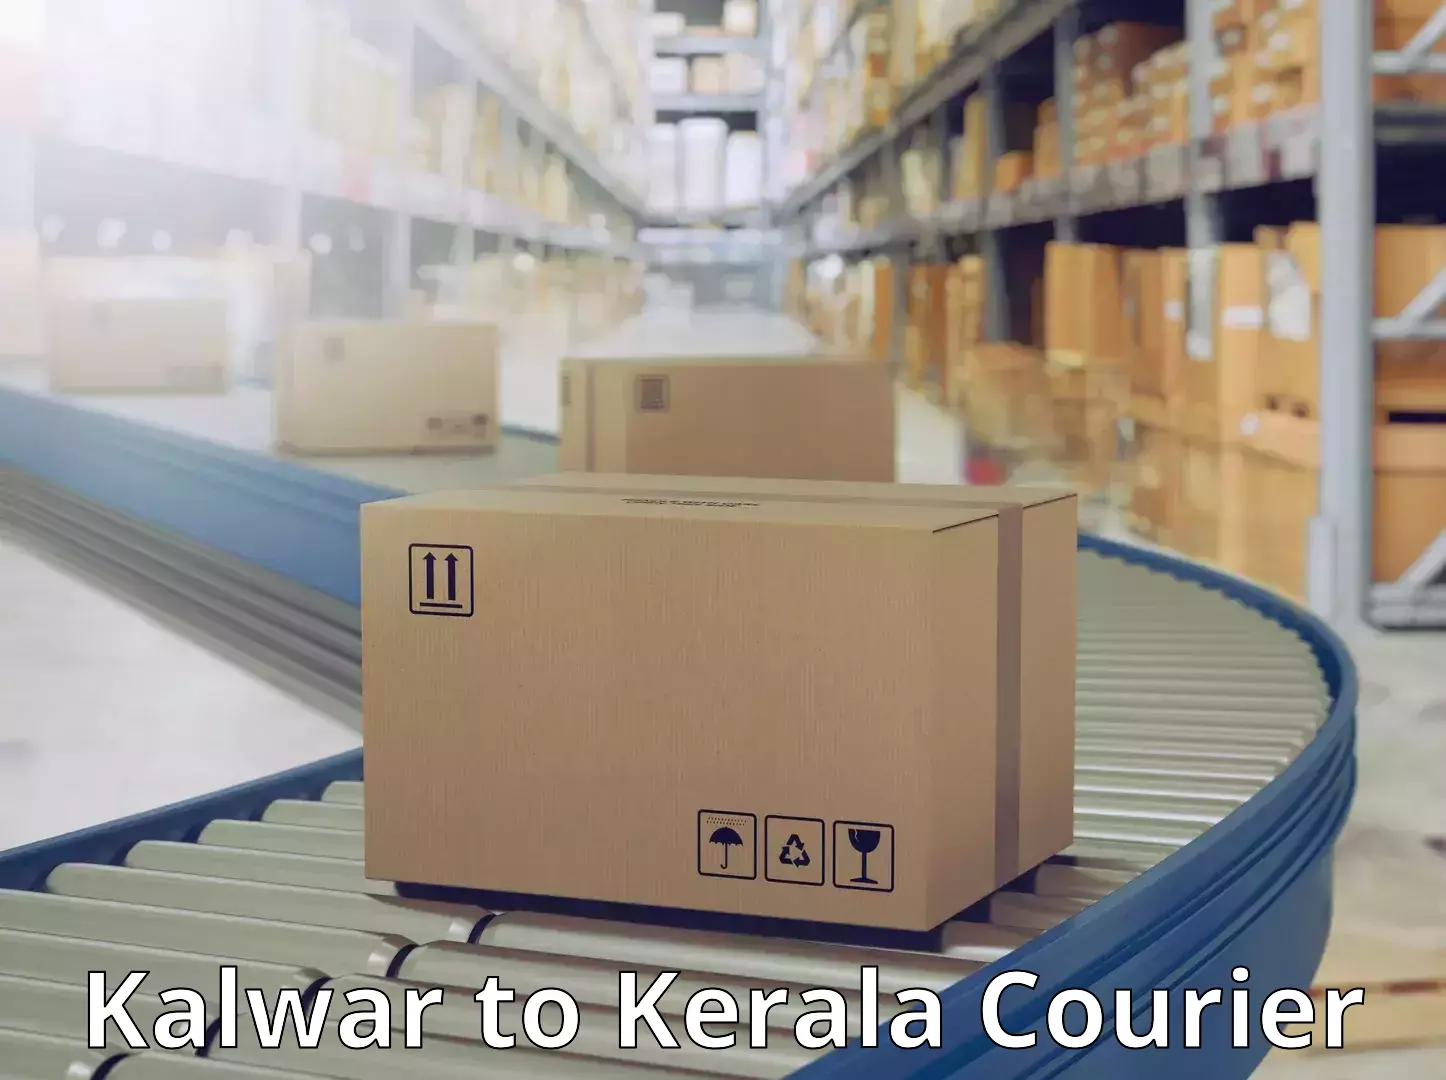 Secure shipping methods Kalwar to Kerala